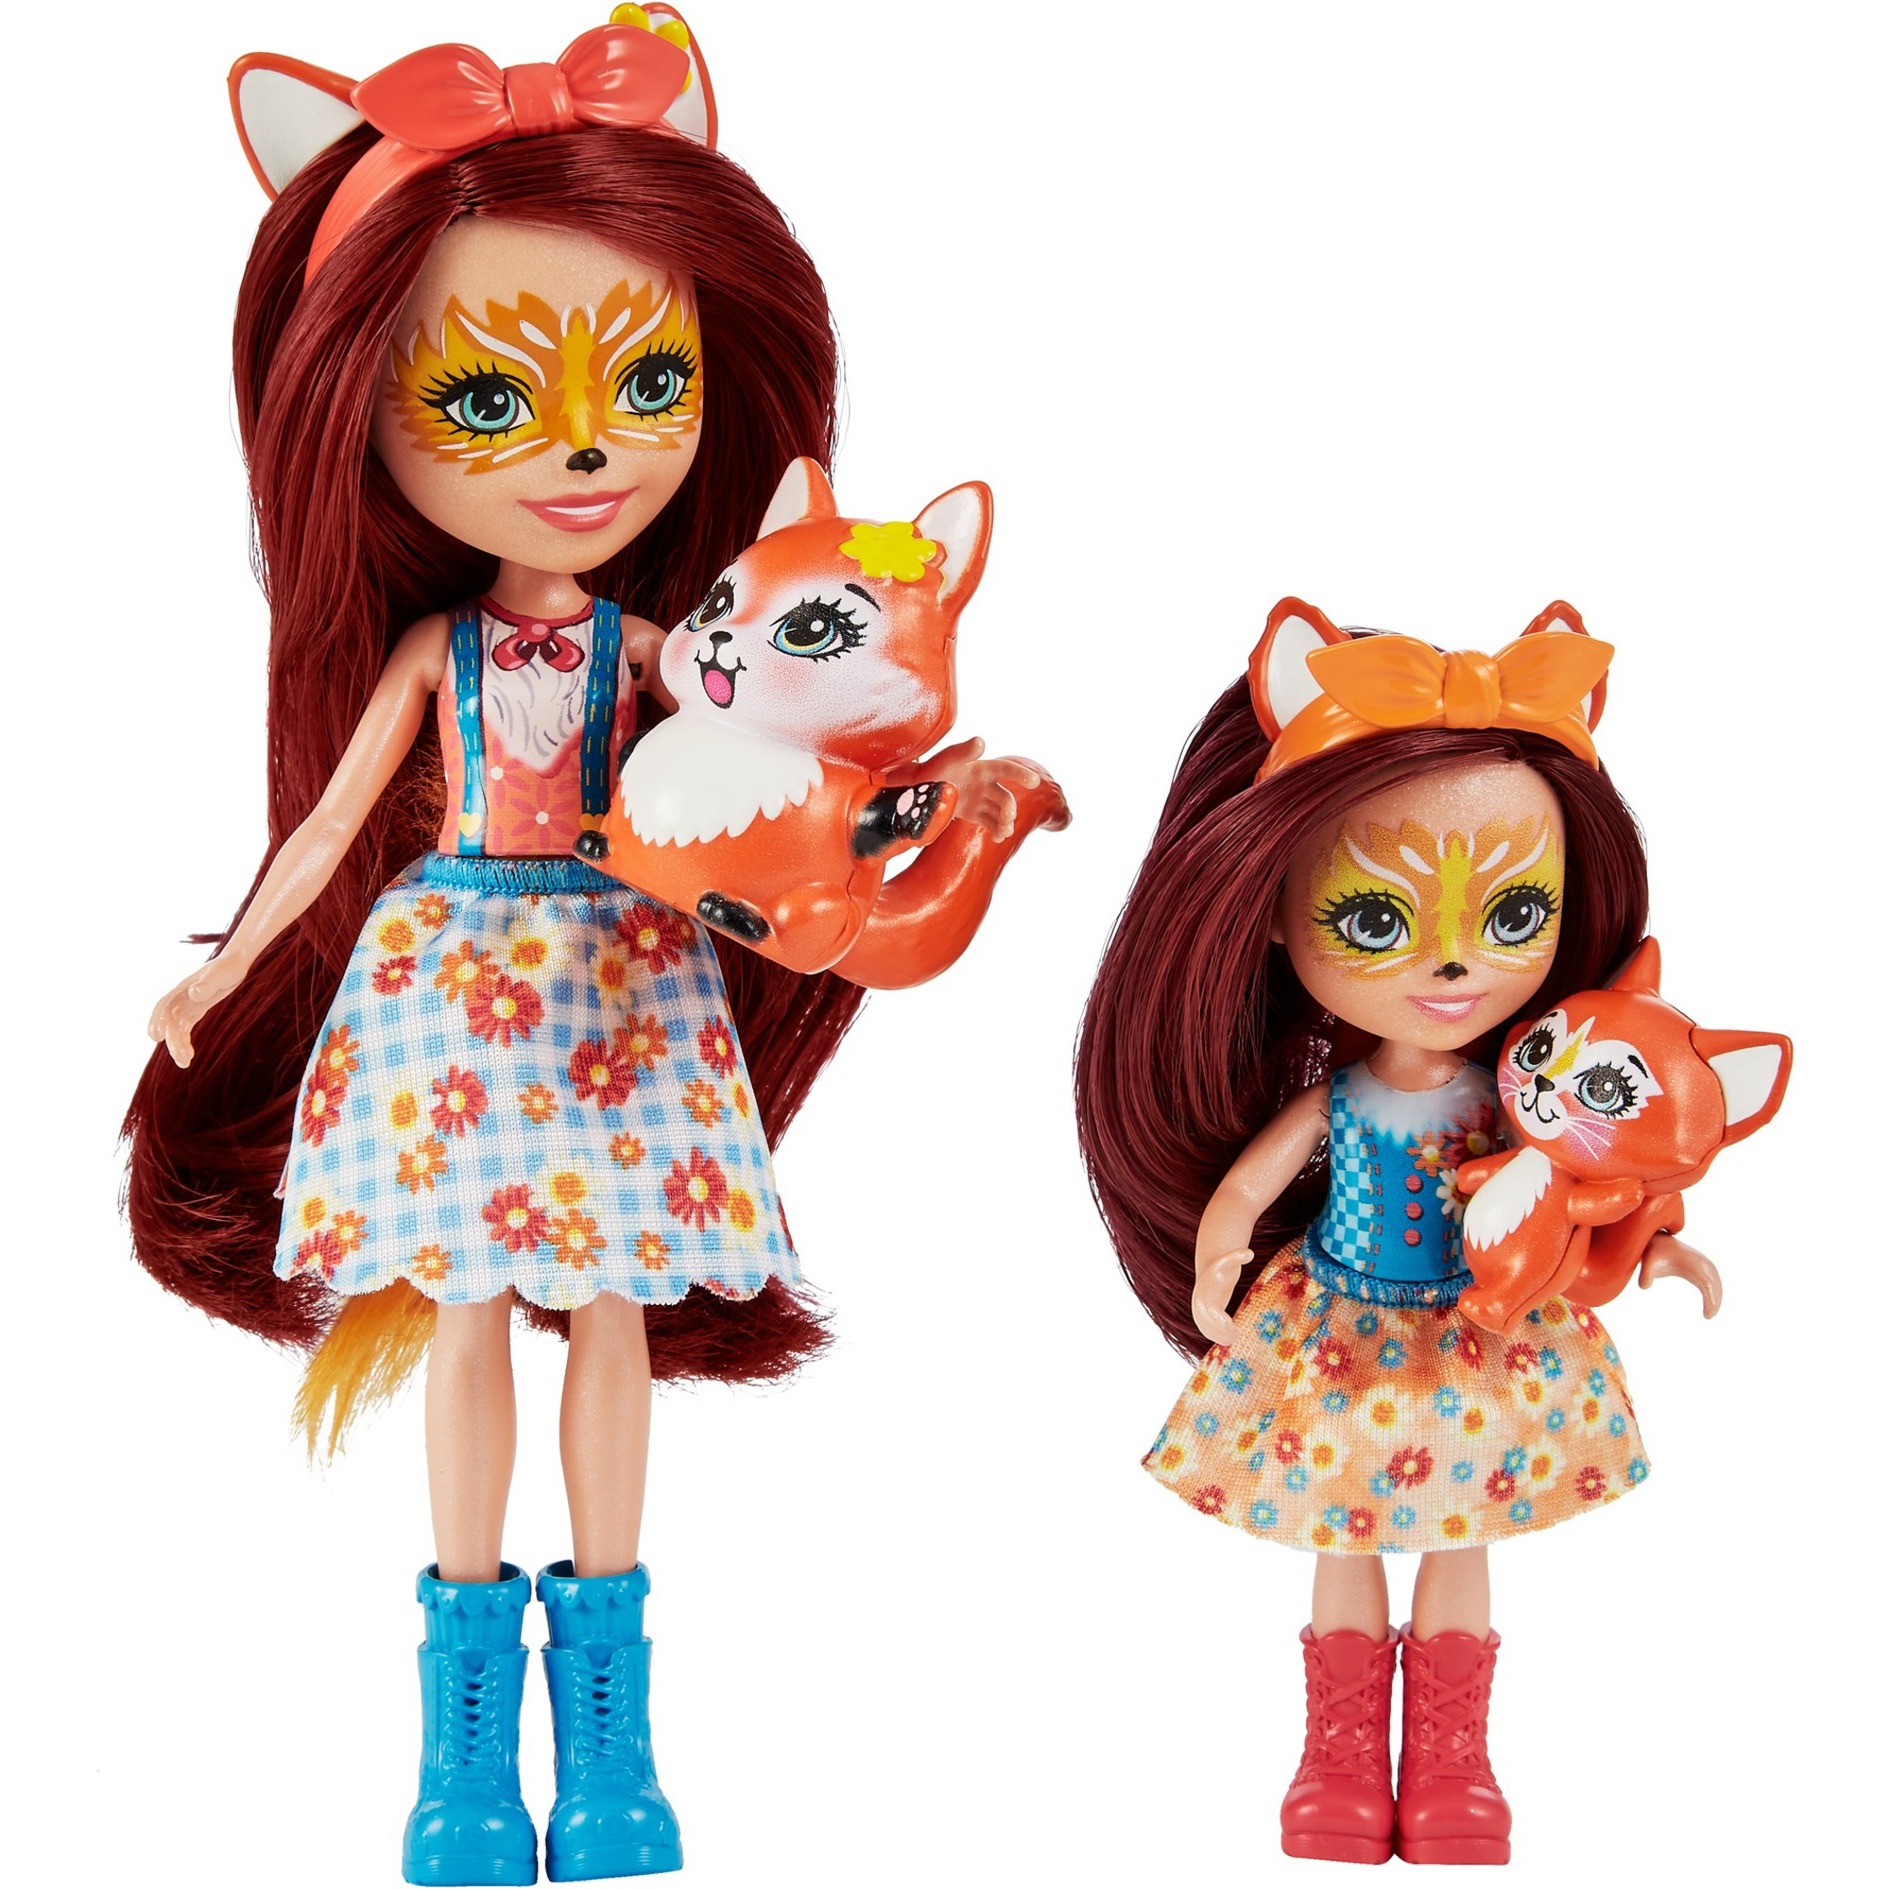 Image of Alternate - Enchantimals Felicity Fox Puppe und kleine Schwester online einkaufen bei Alternate